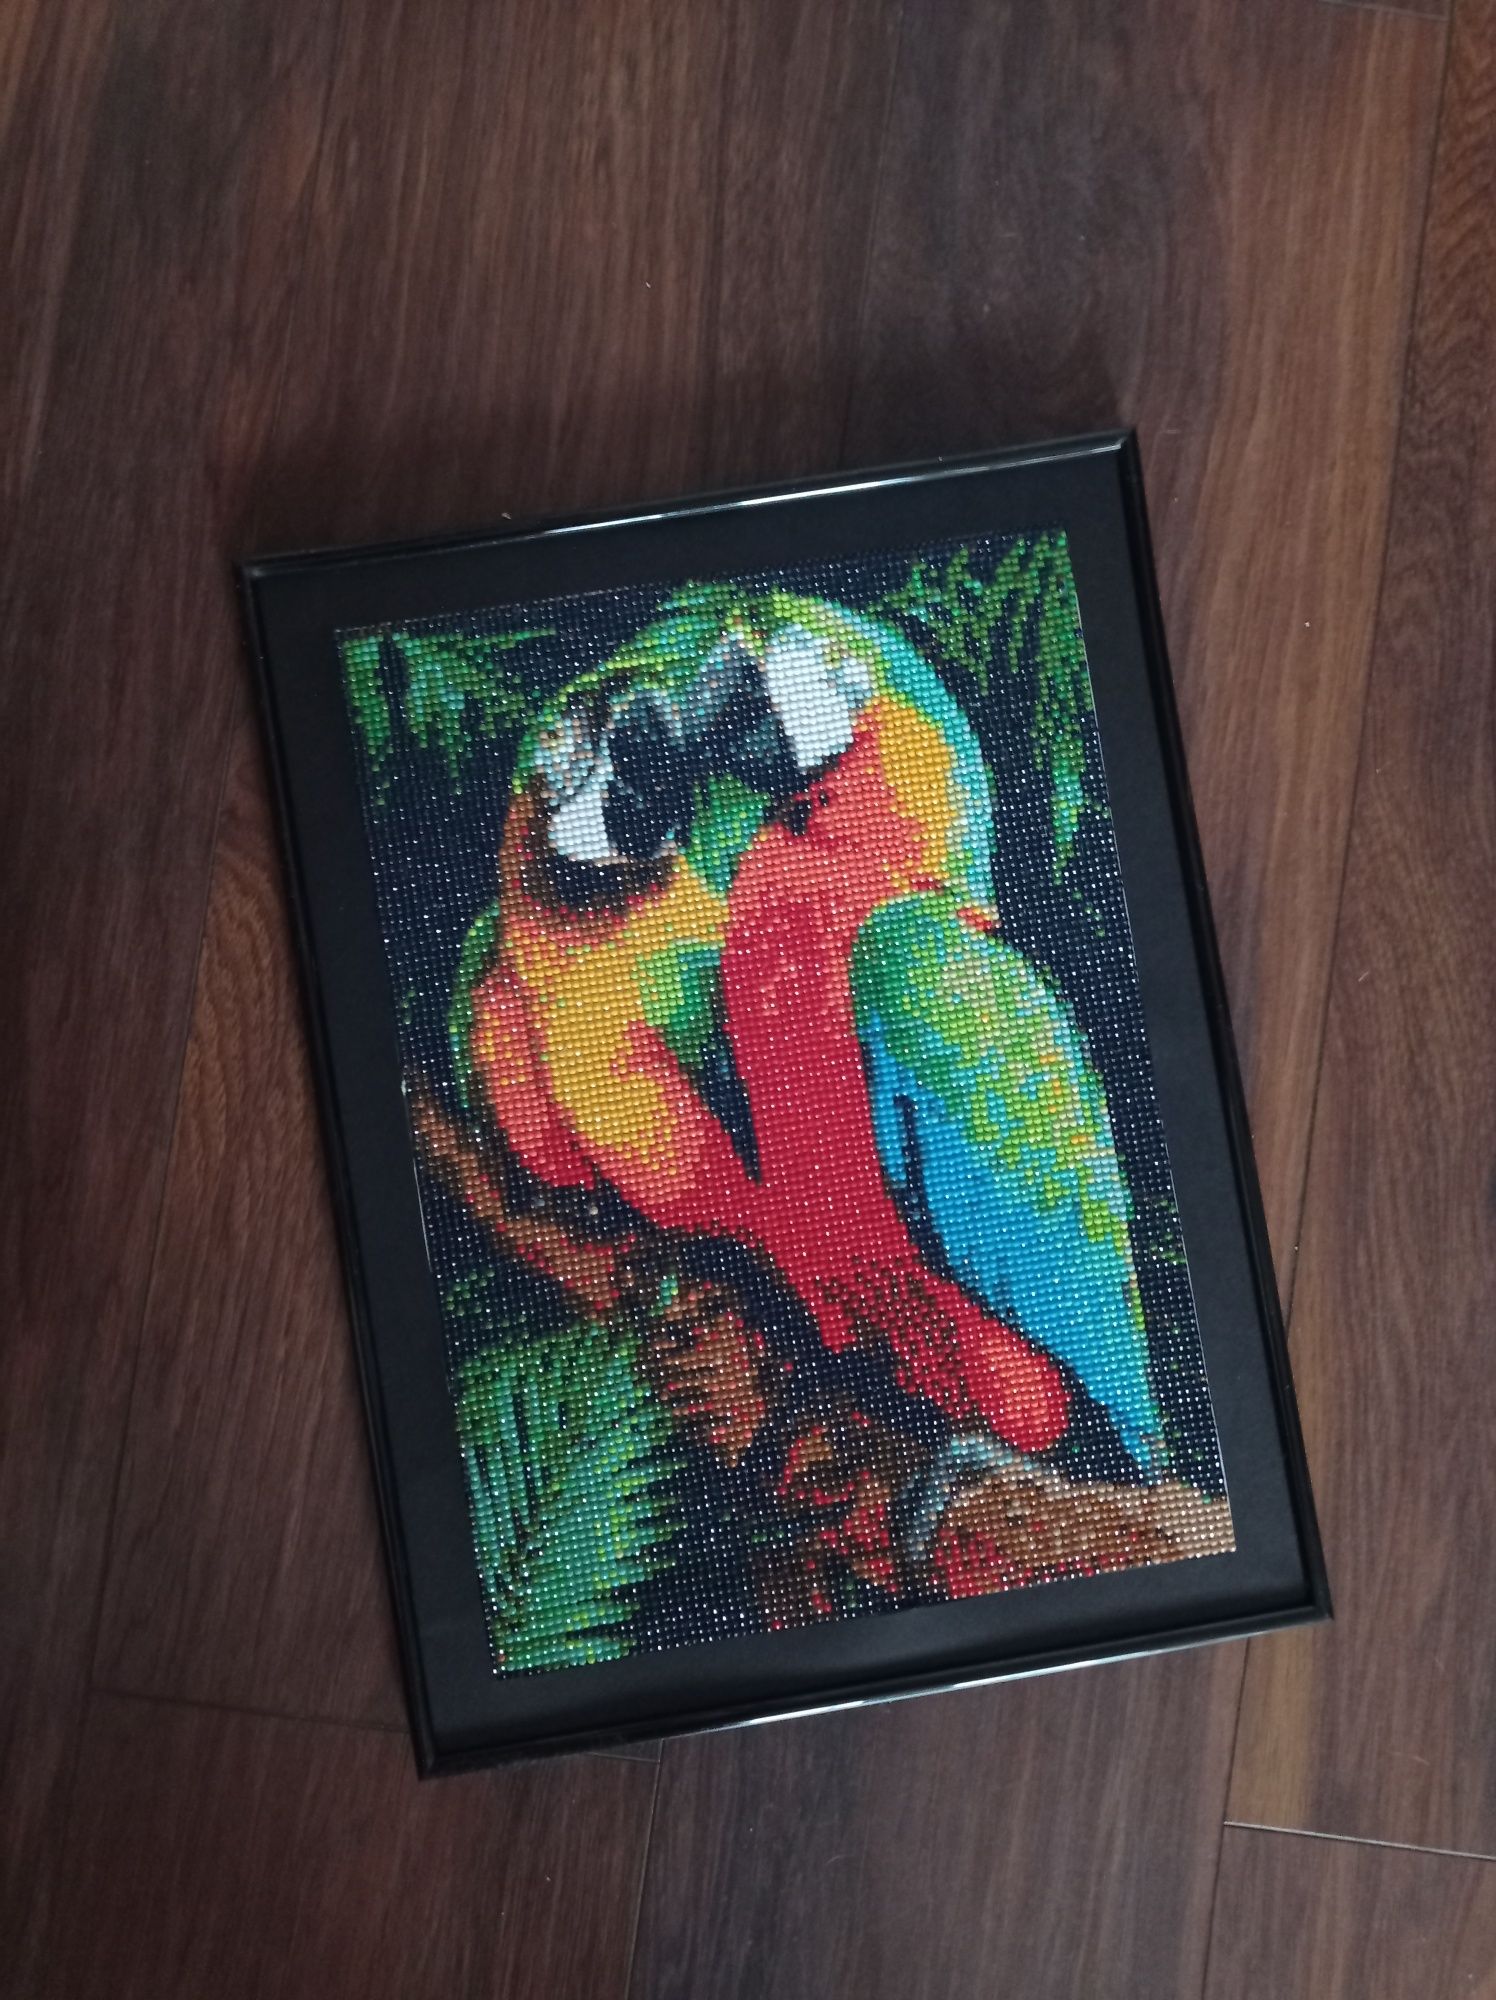 Obraz daimond painting ułożony papugi gotowy